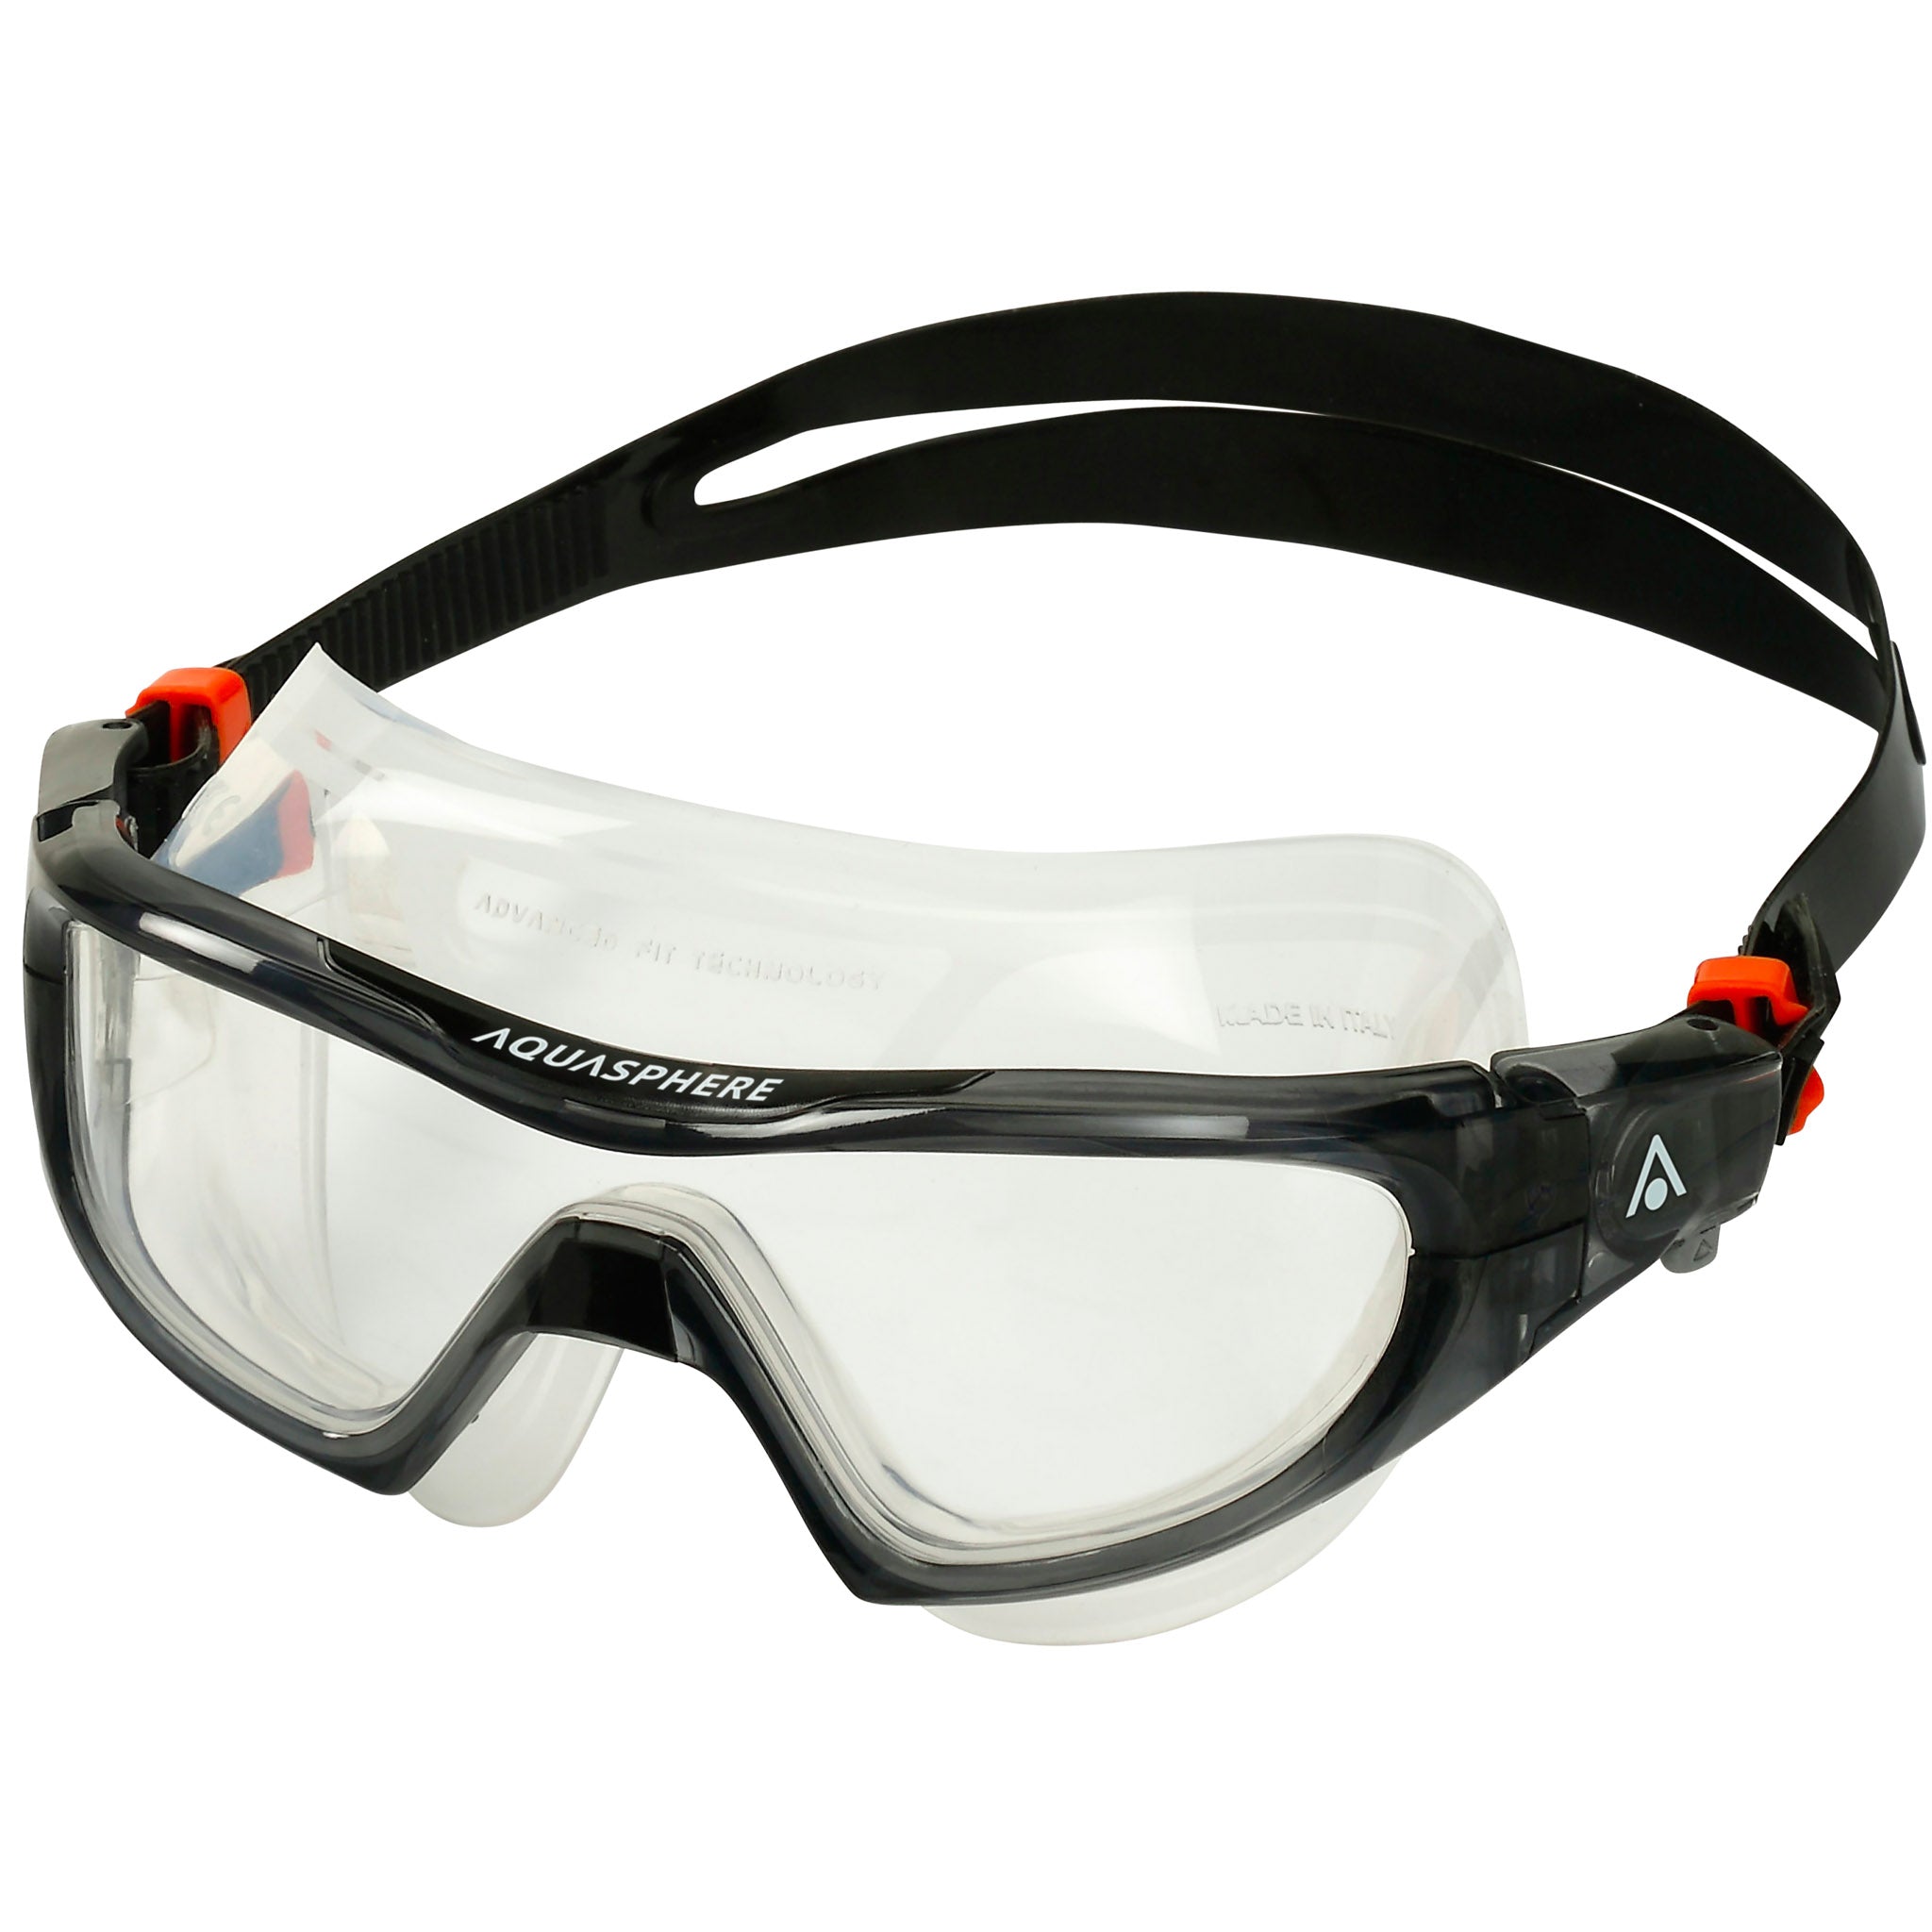 Aquasphere Vista Pro Swimming Mask Goggles Clear Lenses